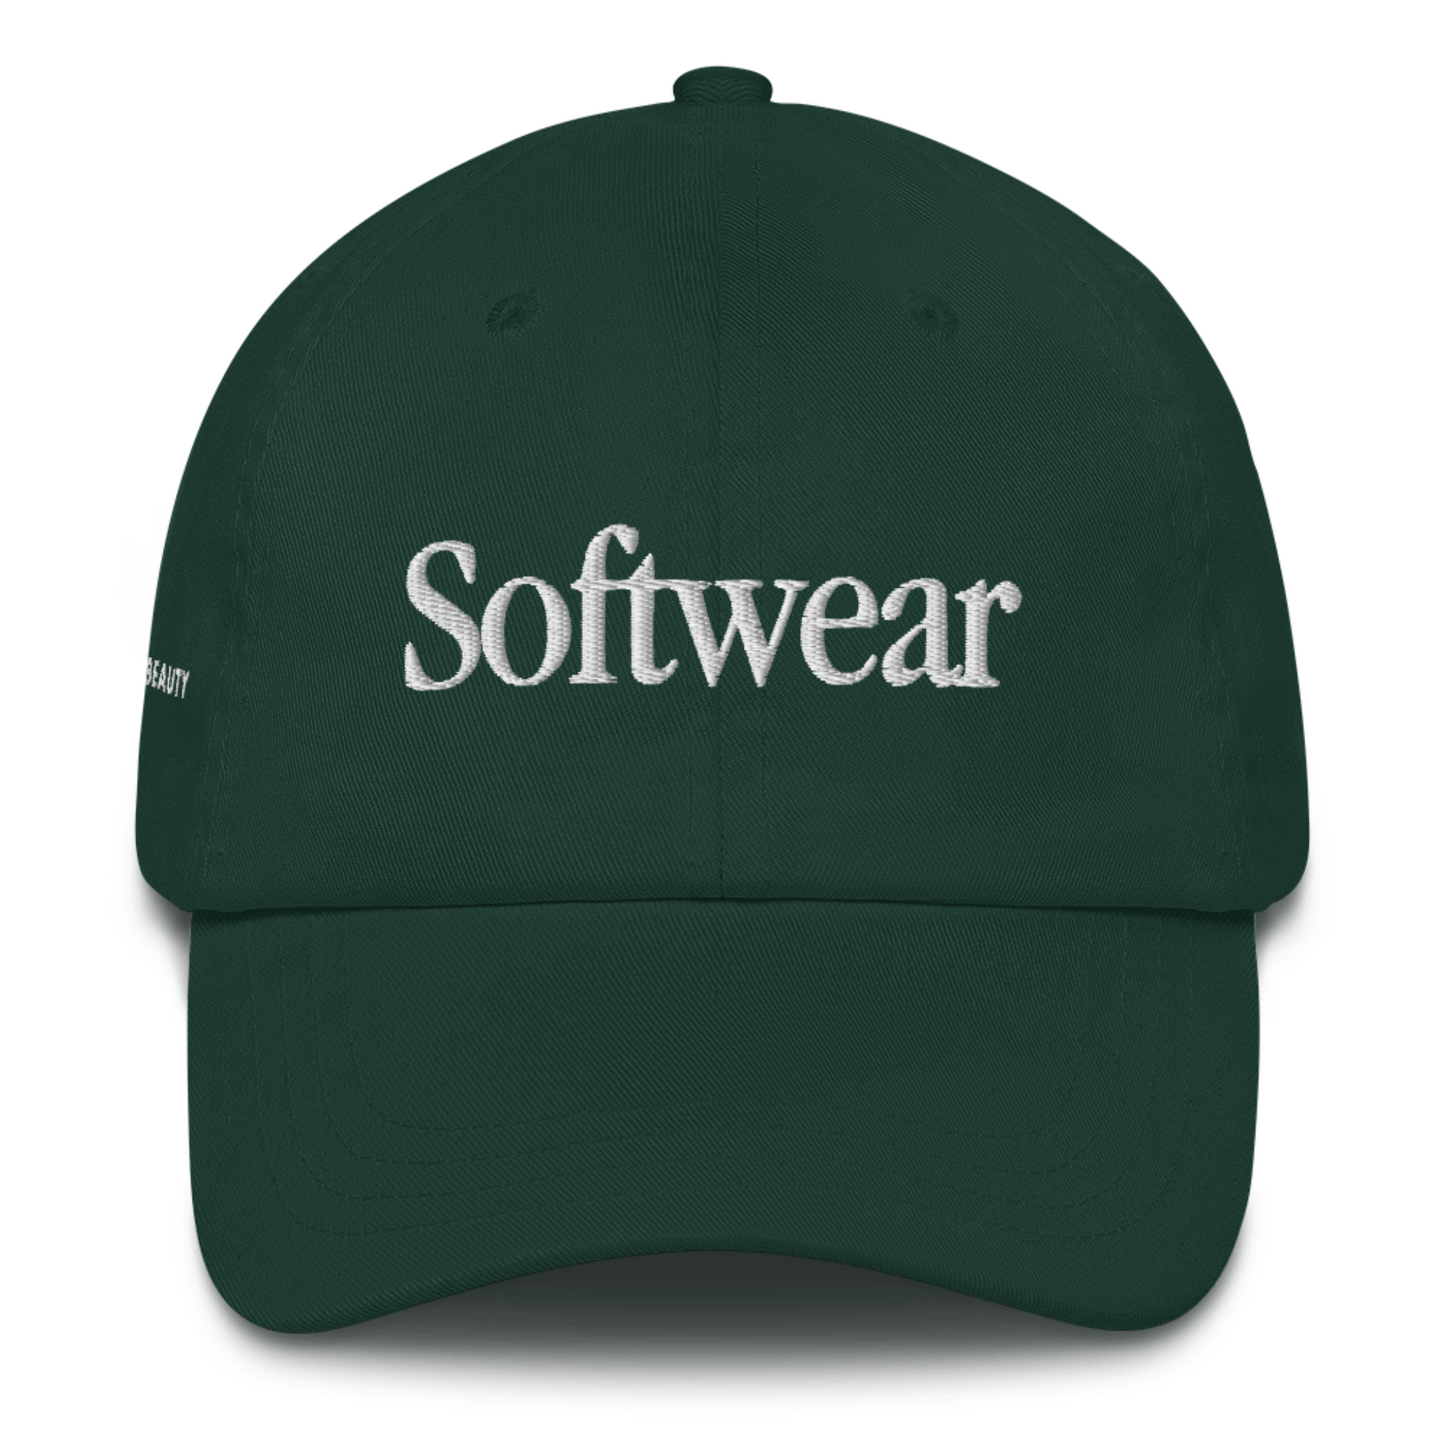 Softwear Classic Hat in Evergreen